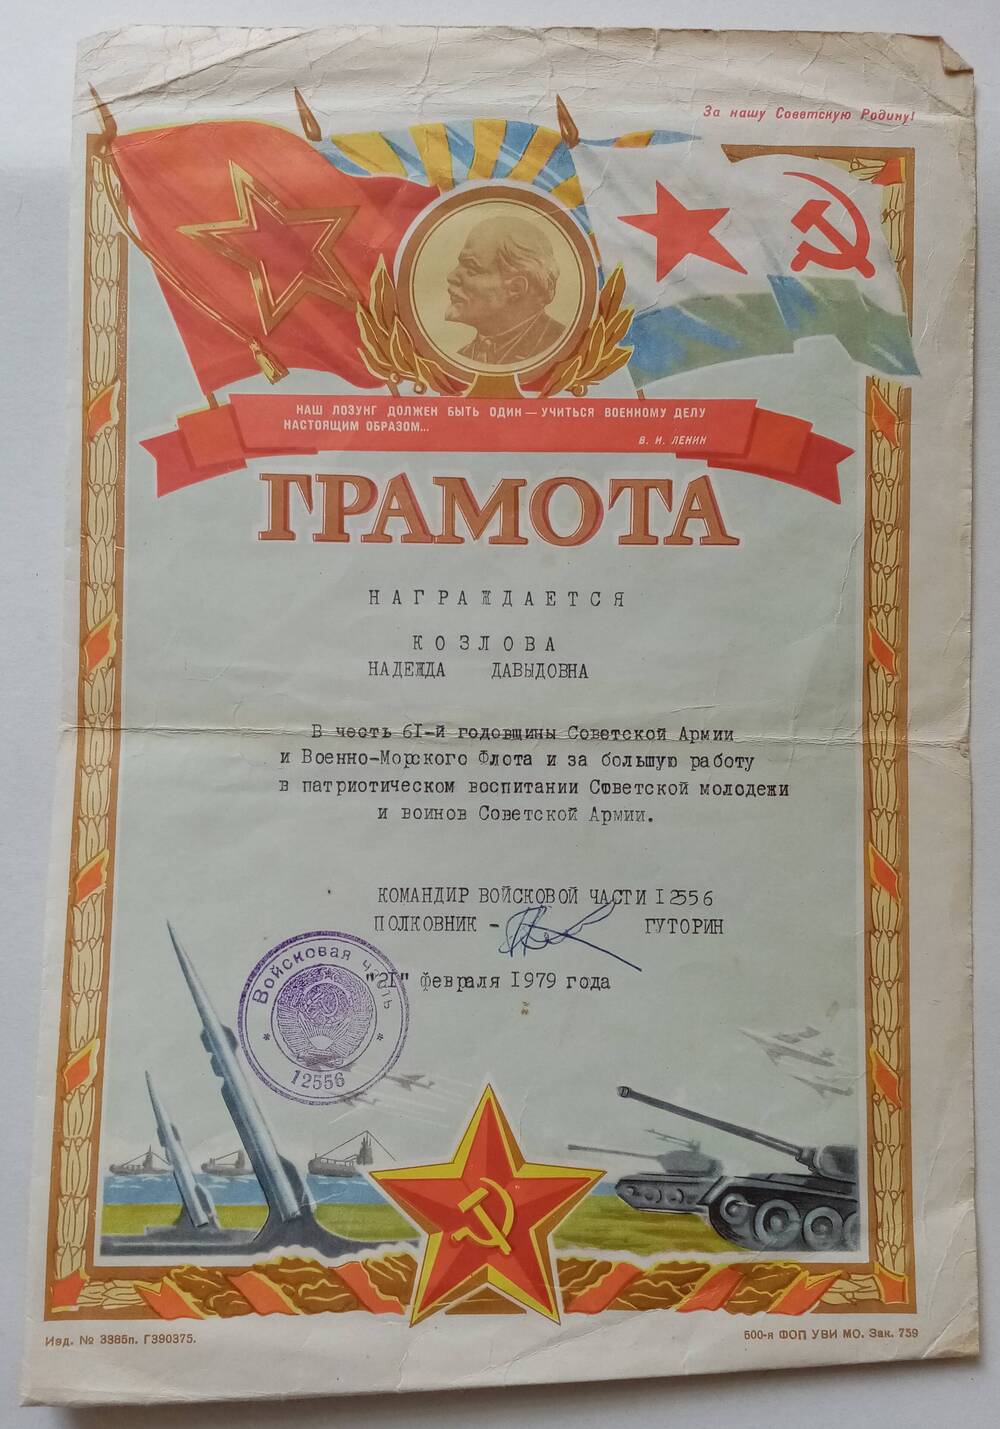 Грамота командира в/ч 12556 от 21.02.1979 года Козловой Надежды Давыдовны